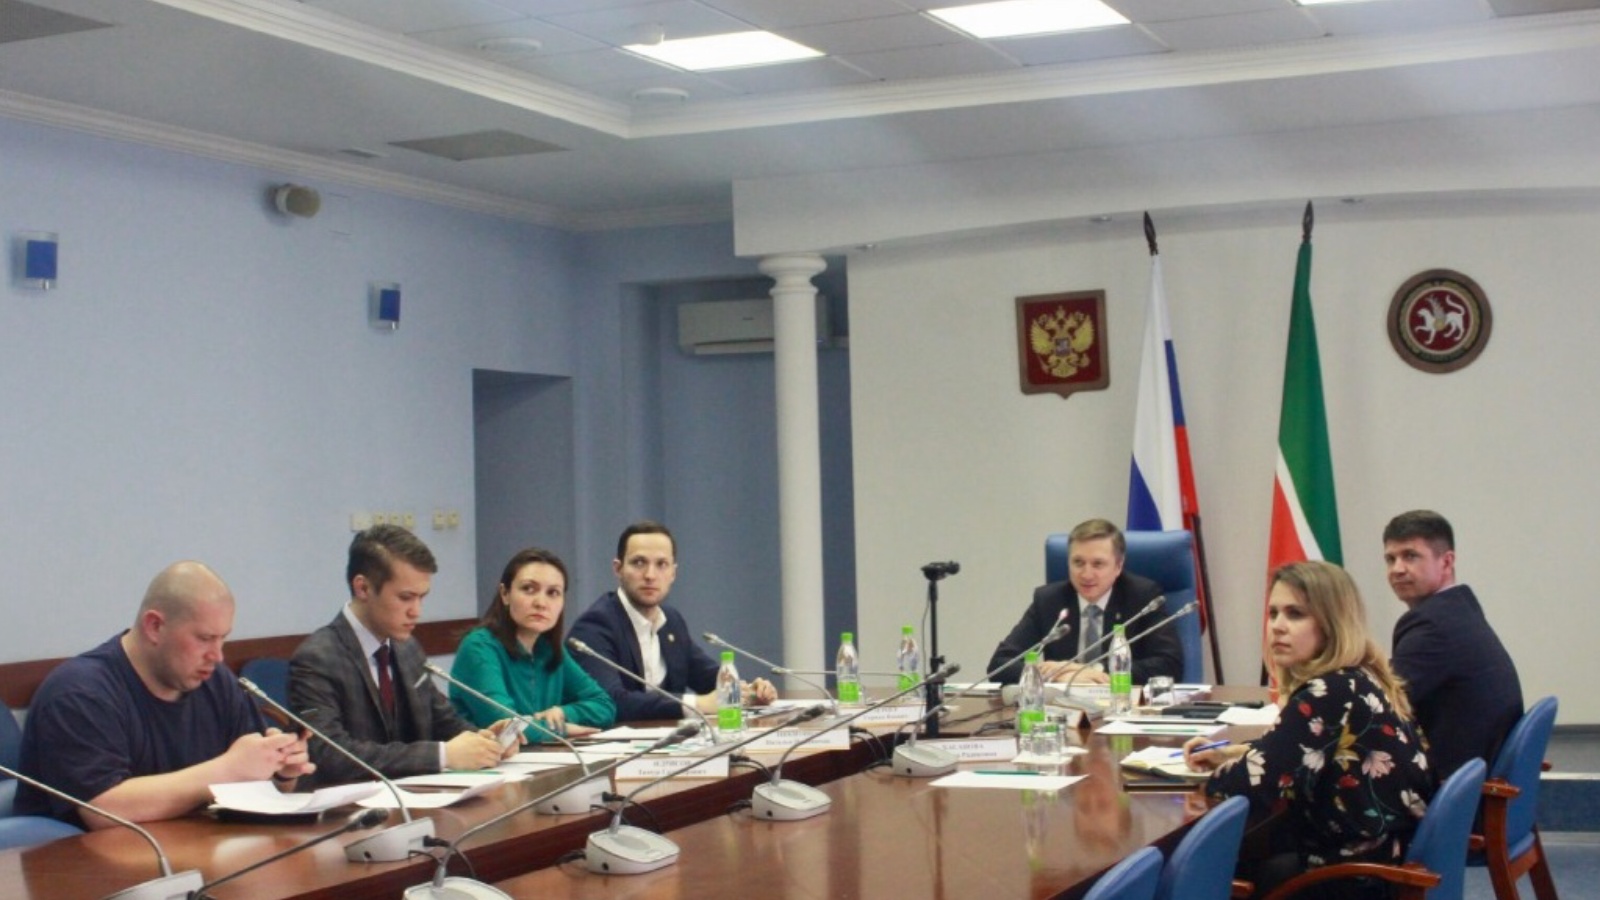 Республика Татарстан и Республика Удмуртия расширяют двустороннее сотрудничество